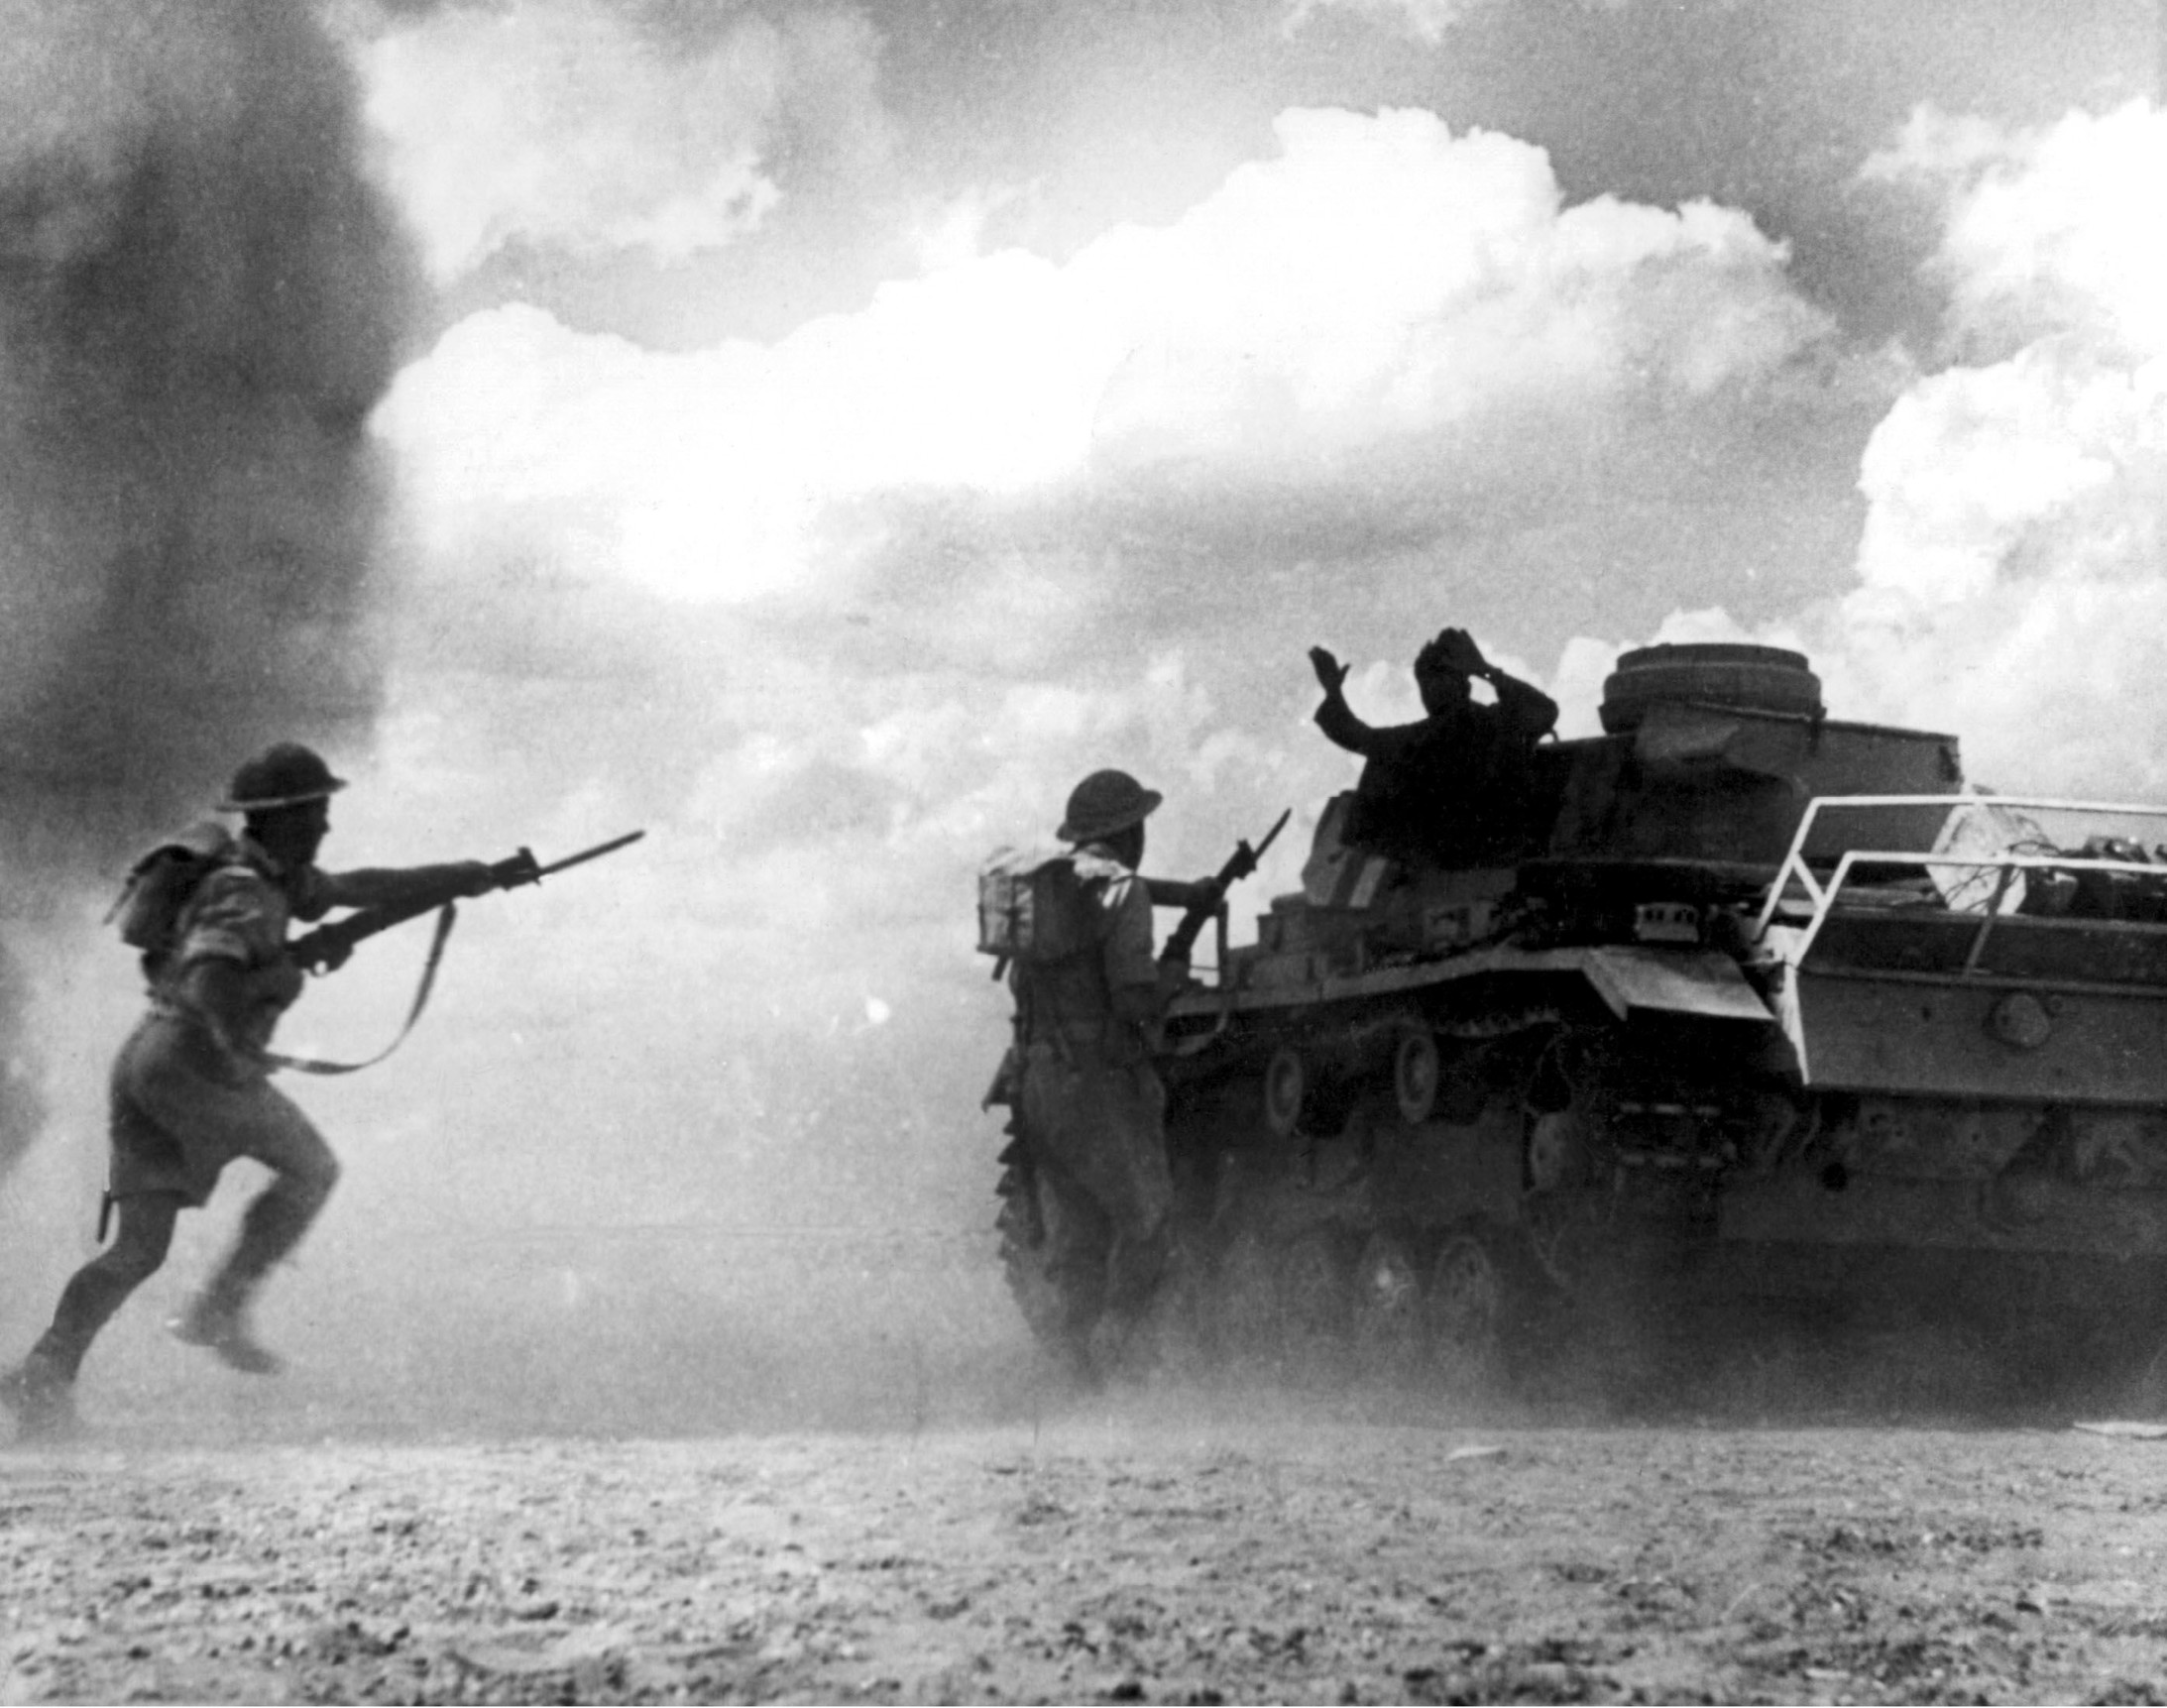 Die Achte Britische Armee startet bei El Alamein in Ägypten eine Grossoffensive gegen die deutsch-italienische Panzerarmee unter Generalfeldmarschall Erwin Rommel. Mit der Offensive beginnt der Zusammenbruch der deutsch-italienischen Truppen, die nach Tunesien zurückgedrängt werden. Dort ergeben sie sich am 13. März 1943. Das Bild zeigt die Besatzung eines deutschen Panzers, die sich während eines Sandsturms den anstürmenden Briten ergeben. (Foto: Keystone/United Archives)